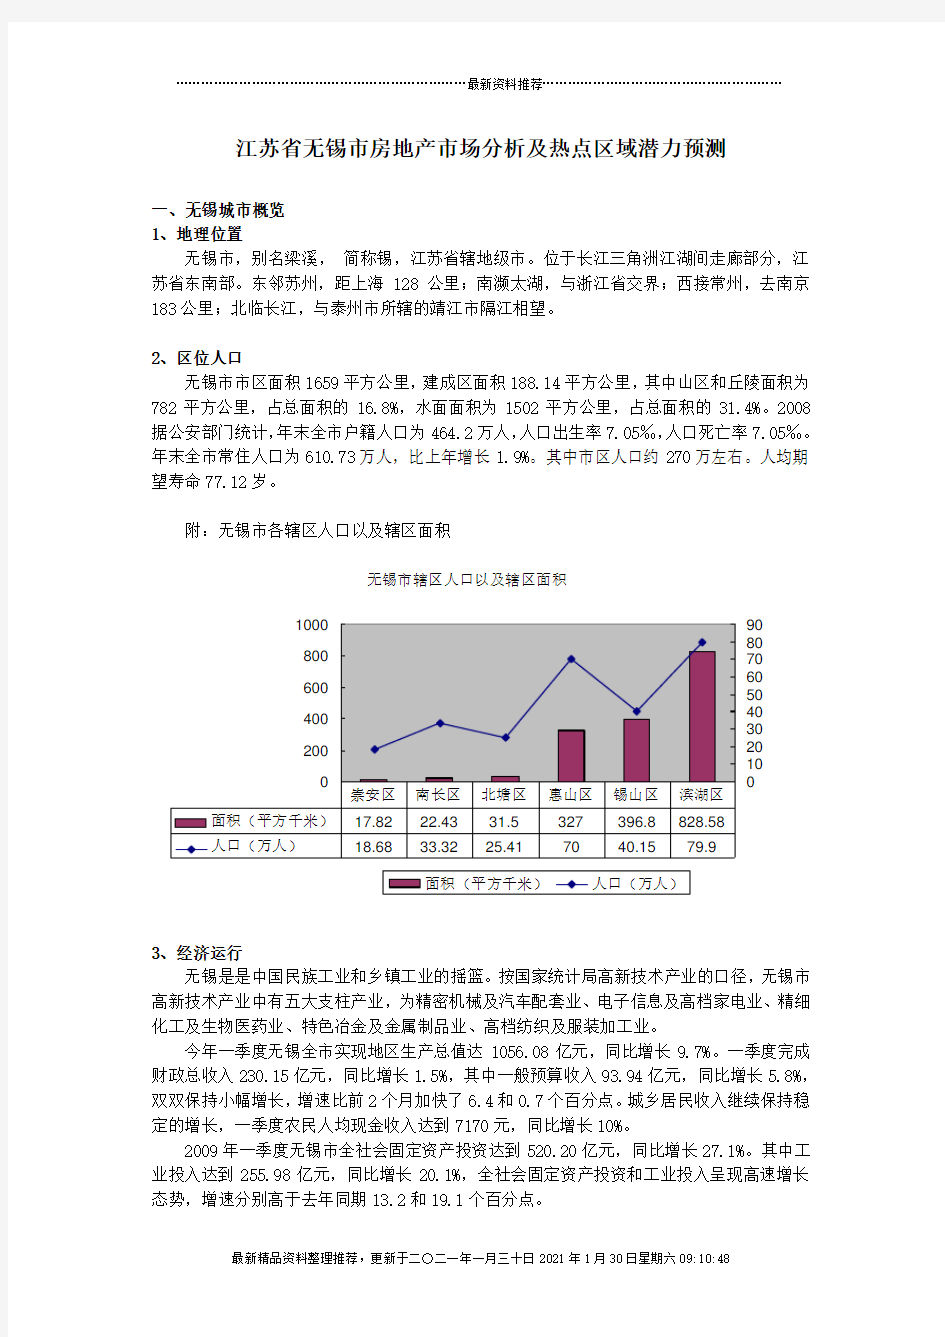 江苏省无锡市房地产市场分析